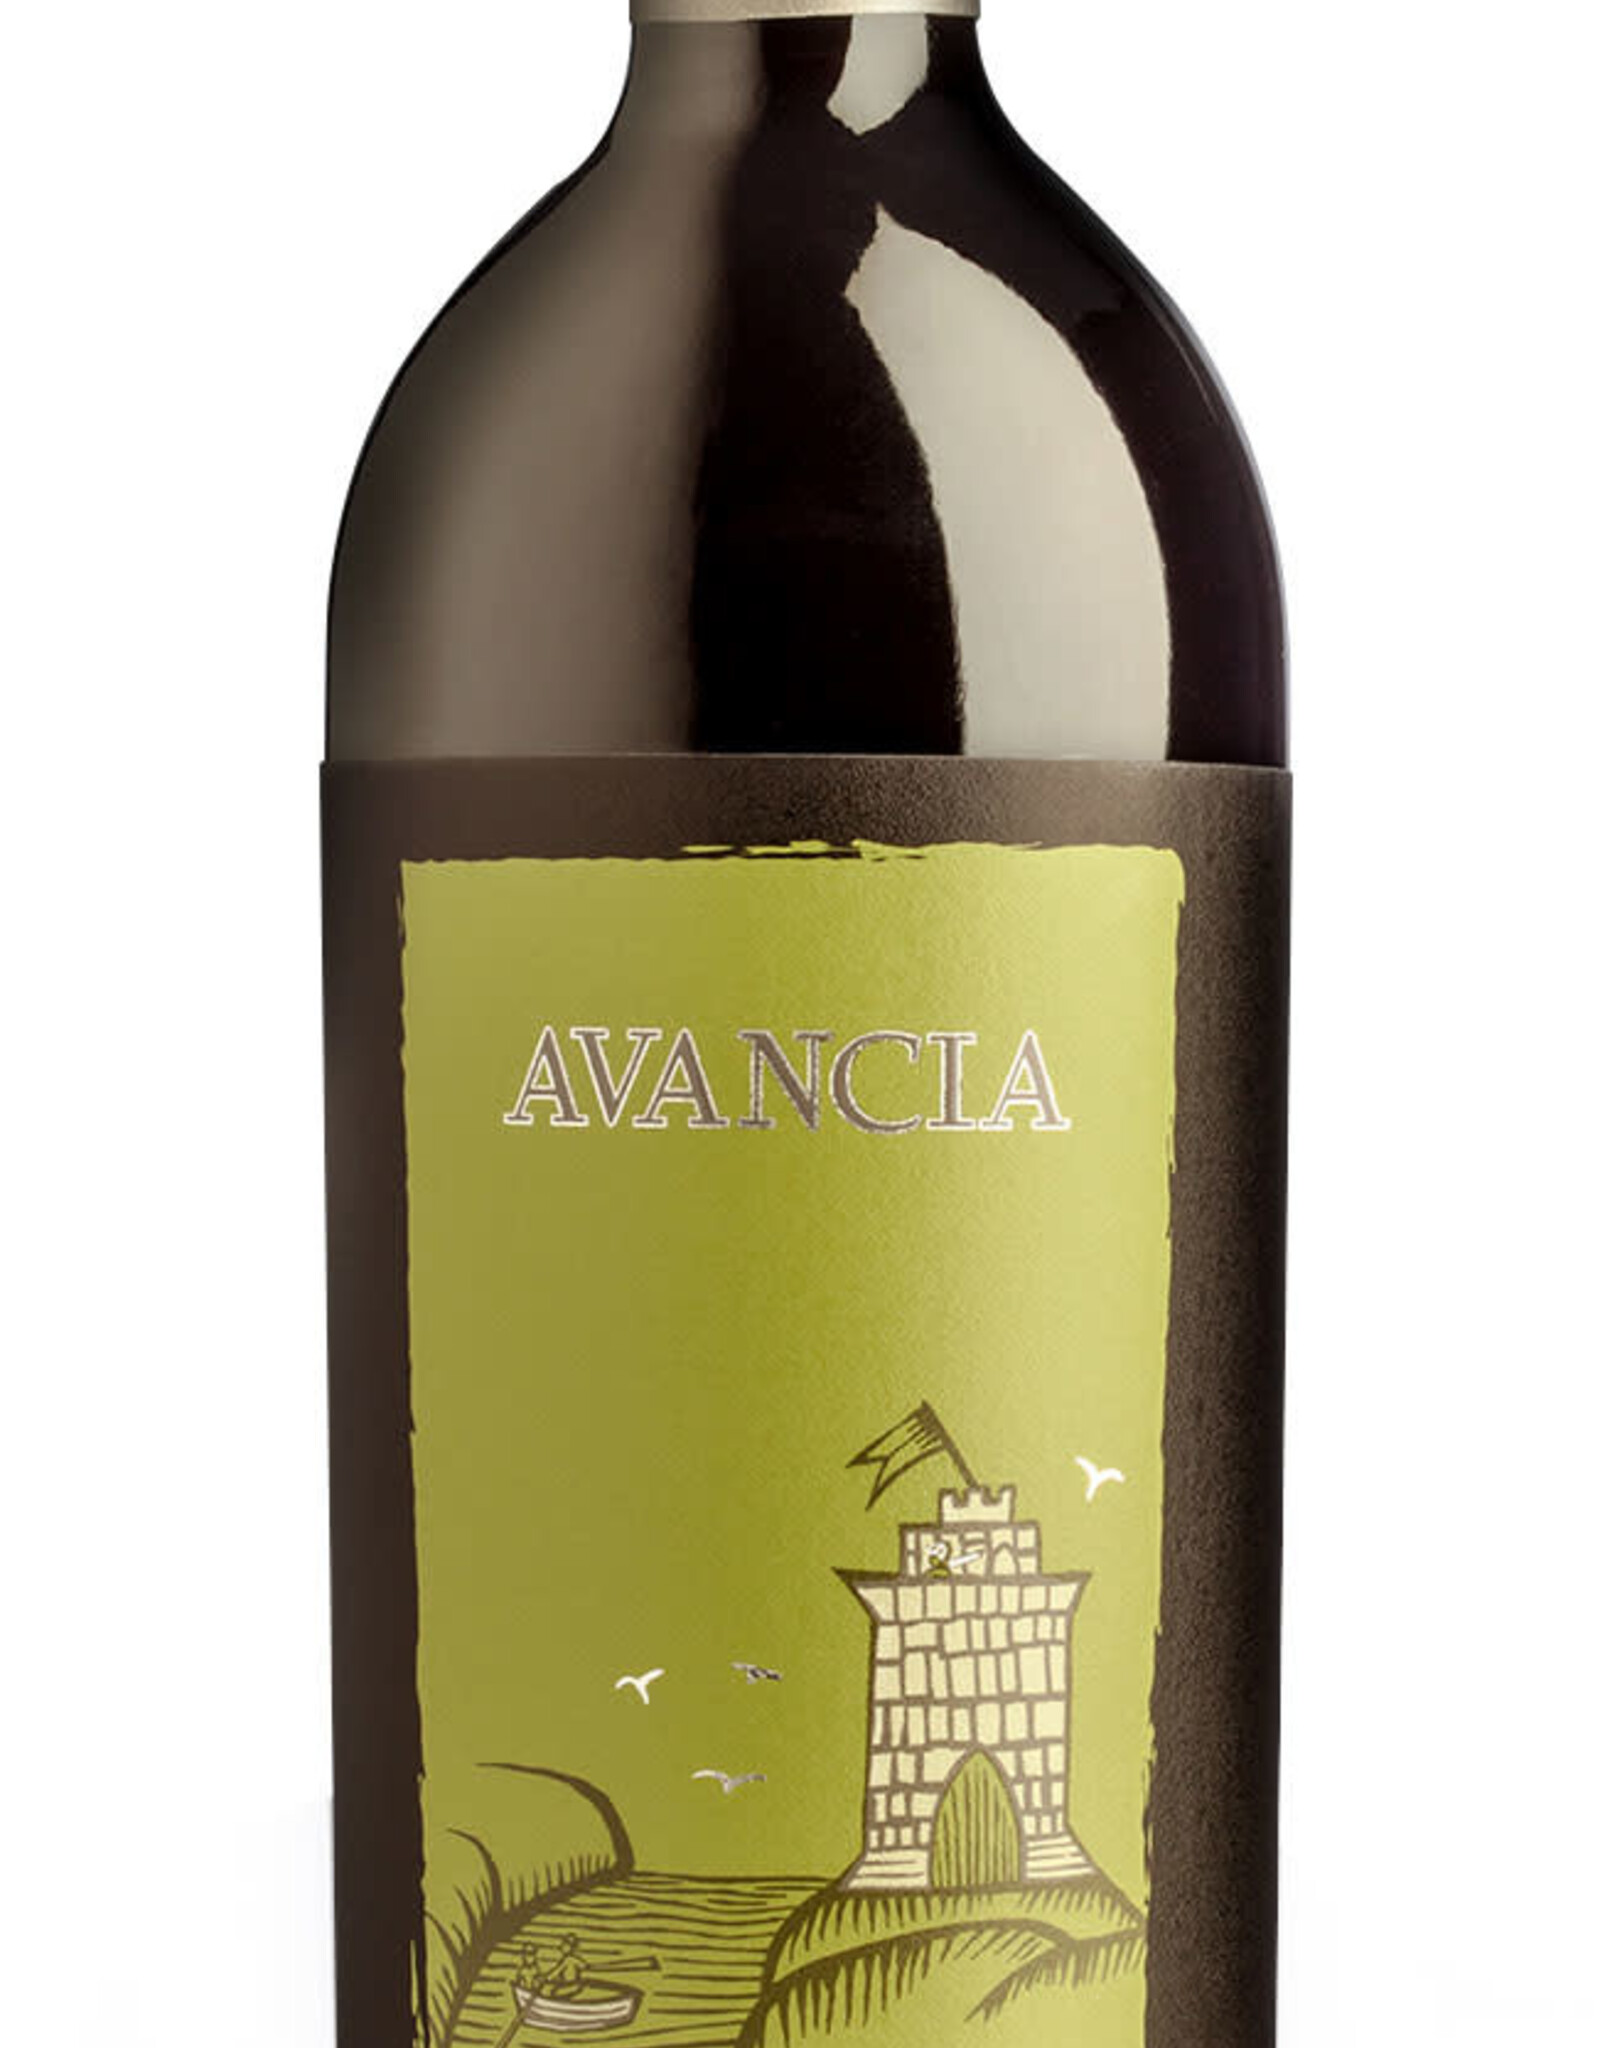 Avancia Avancia Mencia Vinas Viejas, Valdeorras 2014